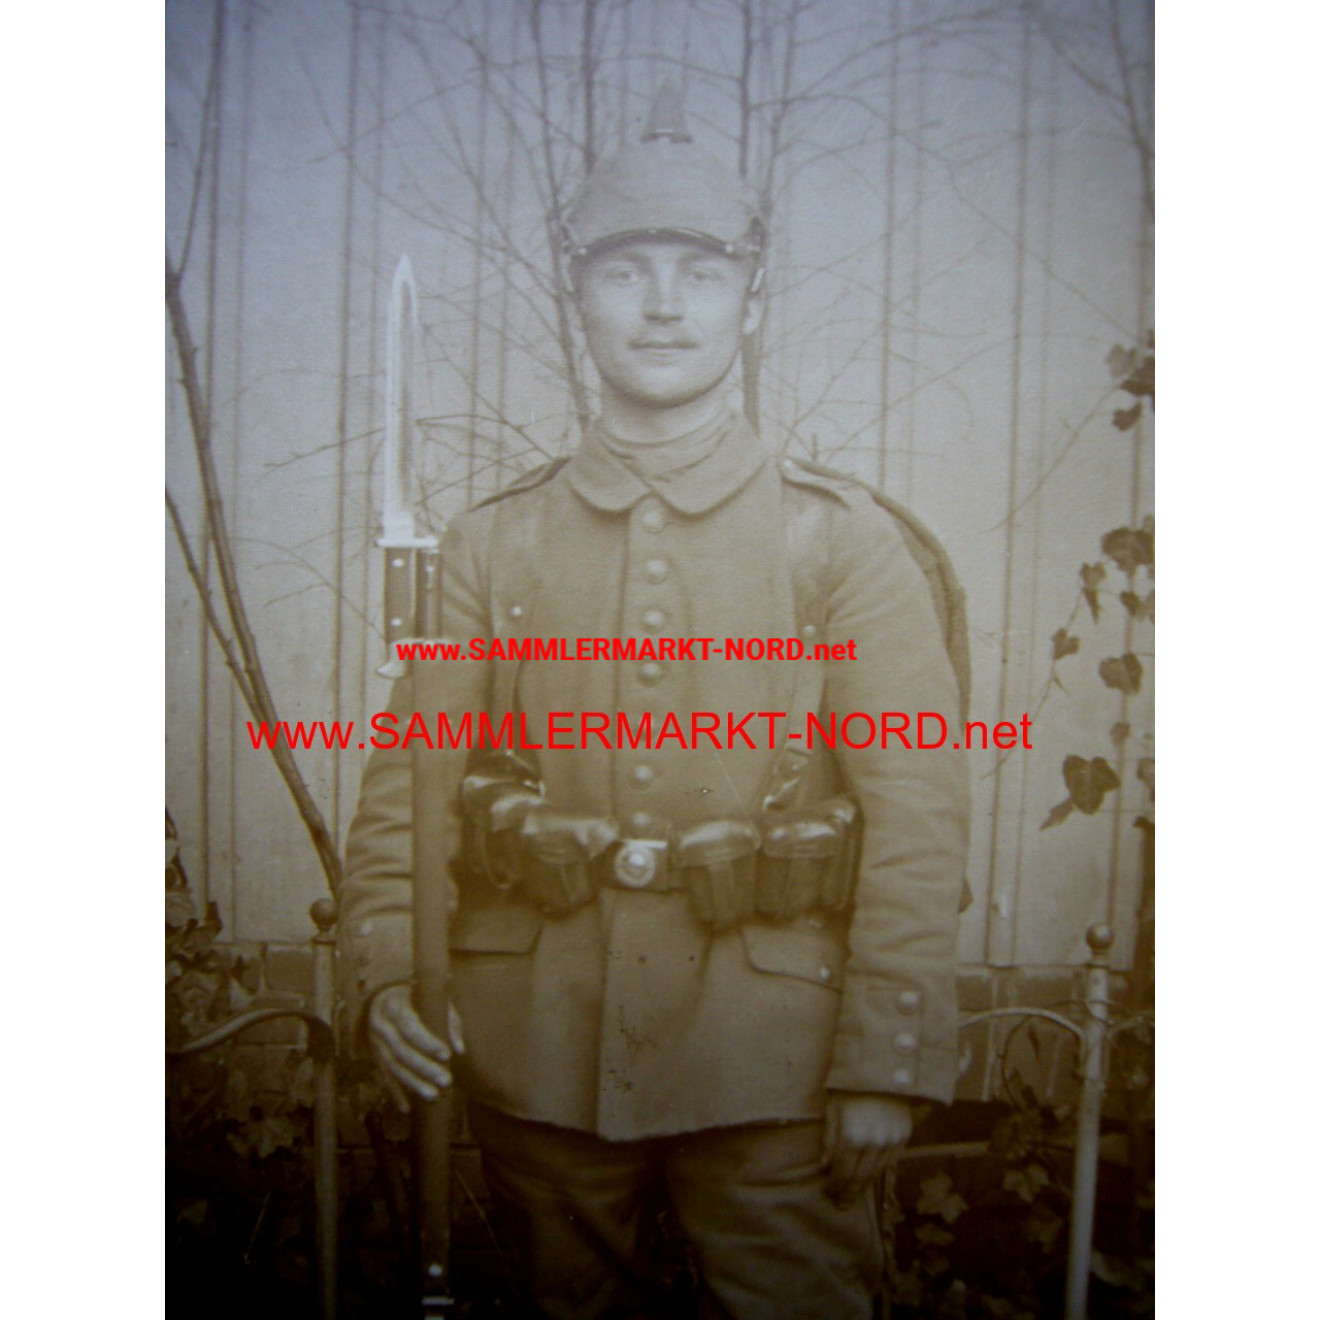 Feldgrauer Infanterist mit Ausrüstung - Portraitfoto